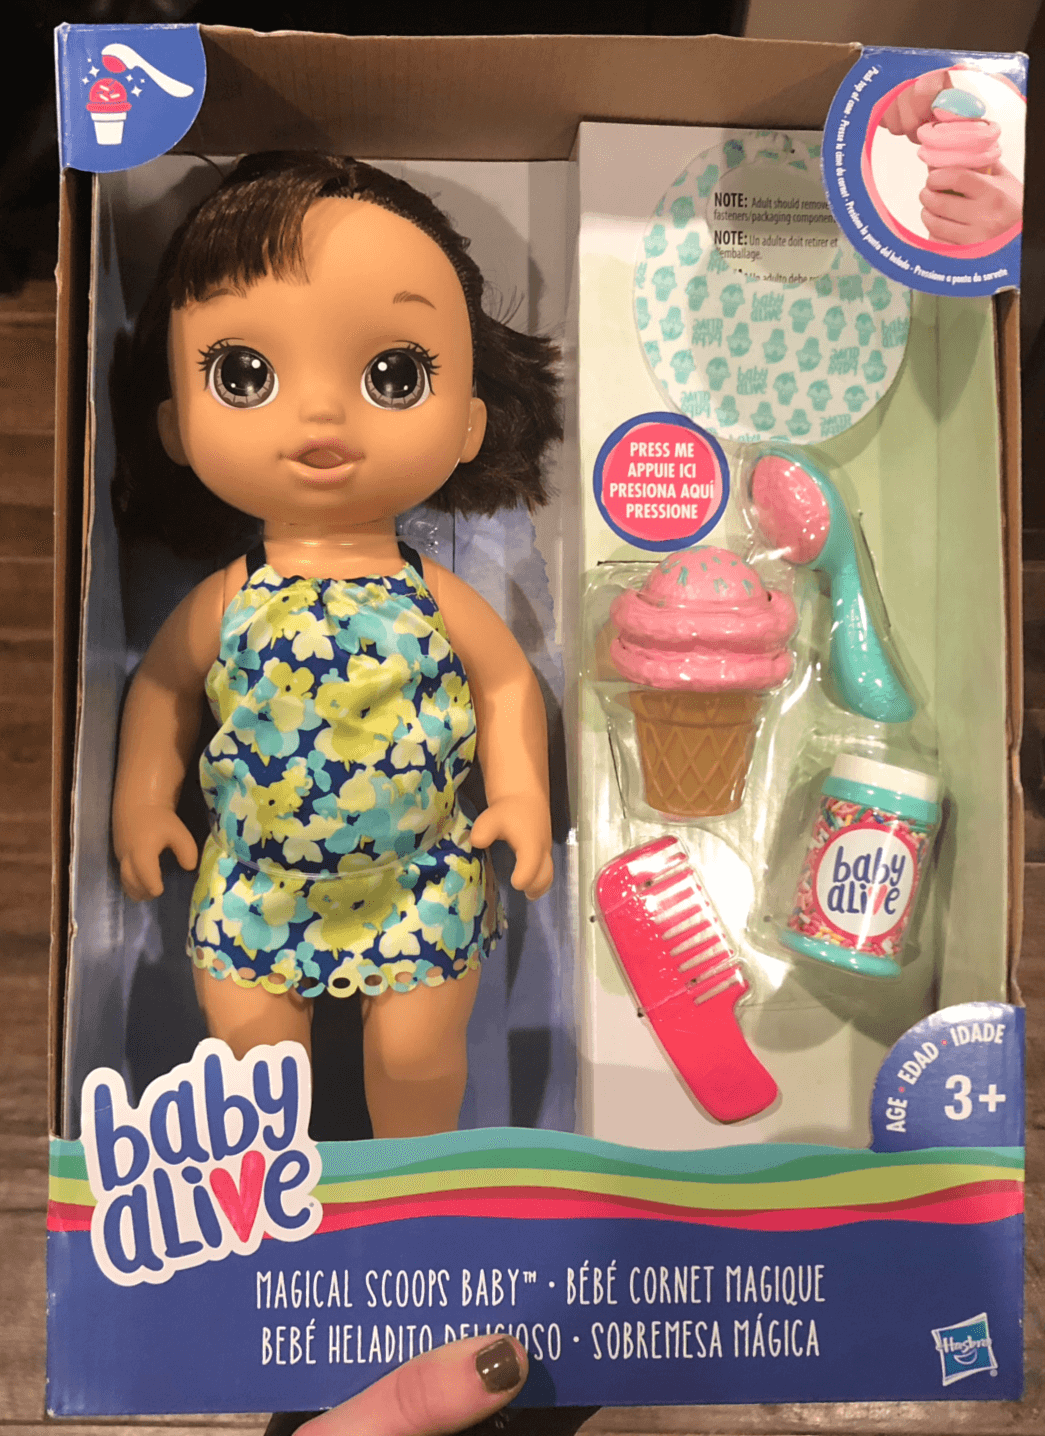 new baby alive dolls 2018